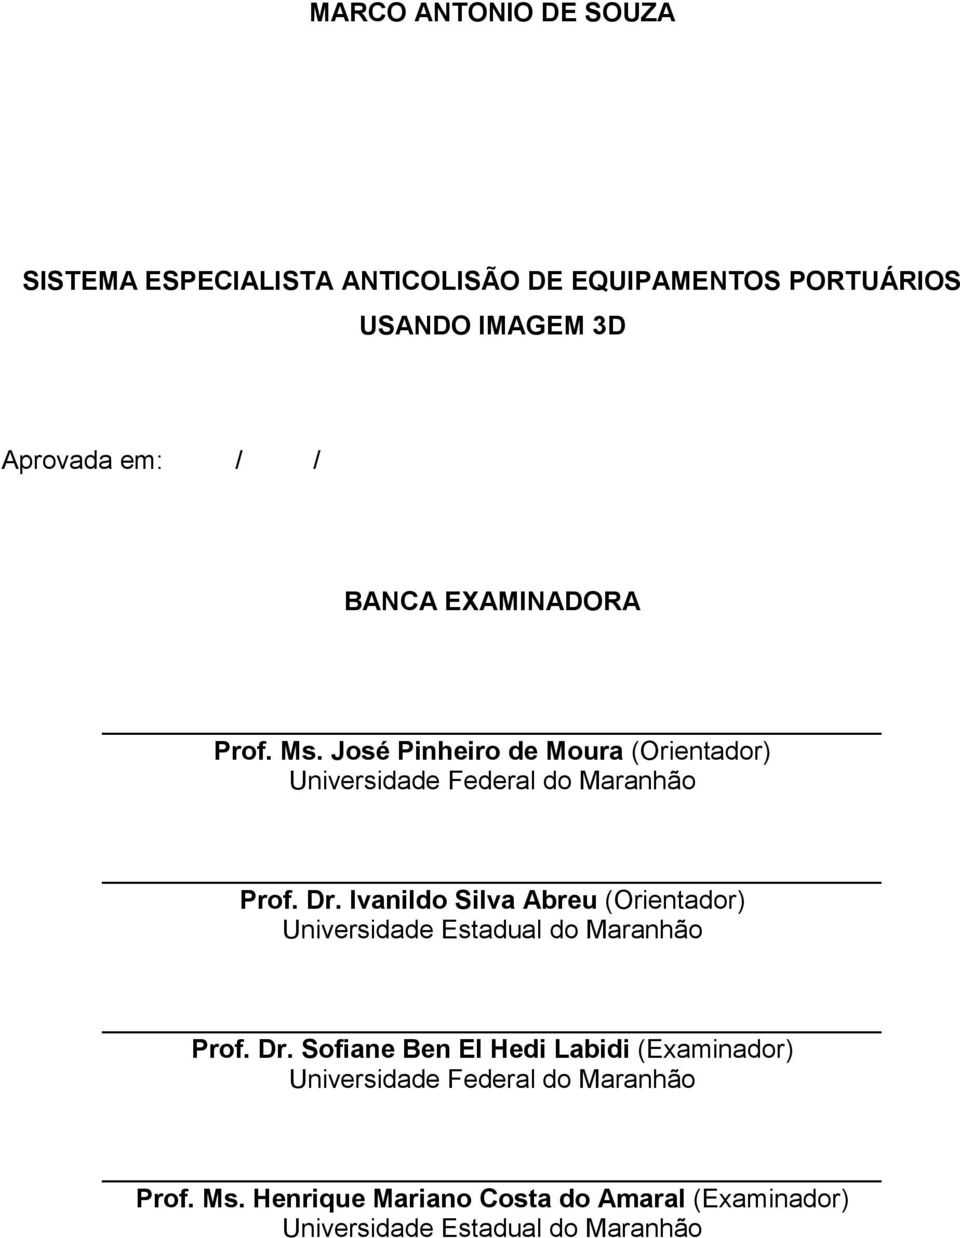 Ivanildo Silva Abreu (Orientador) Universidade Estadual do Maranhão Prof. Dr.